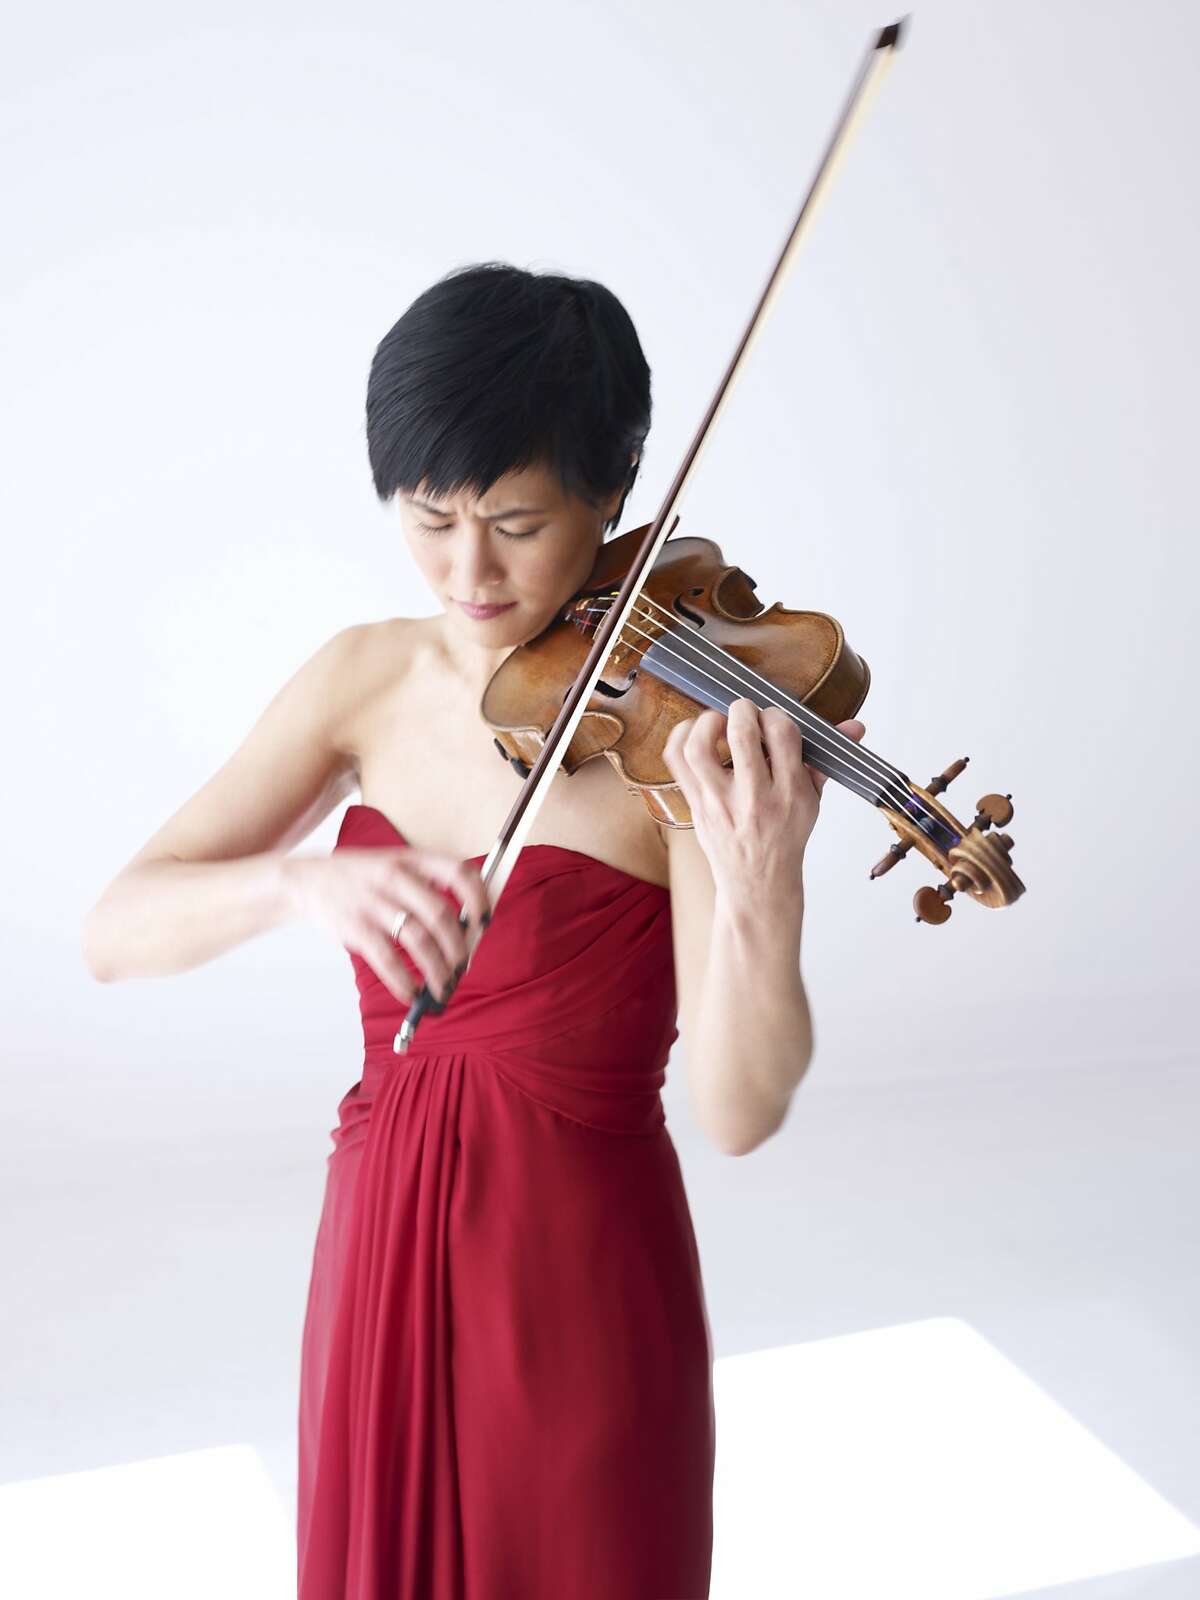 Violinist Jennifer Koh JENNIFER KOH - violinist